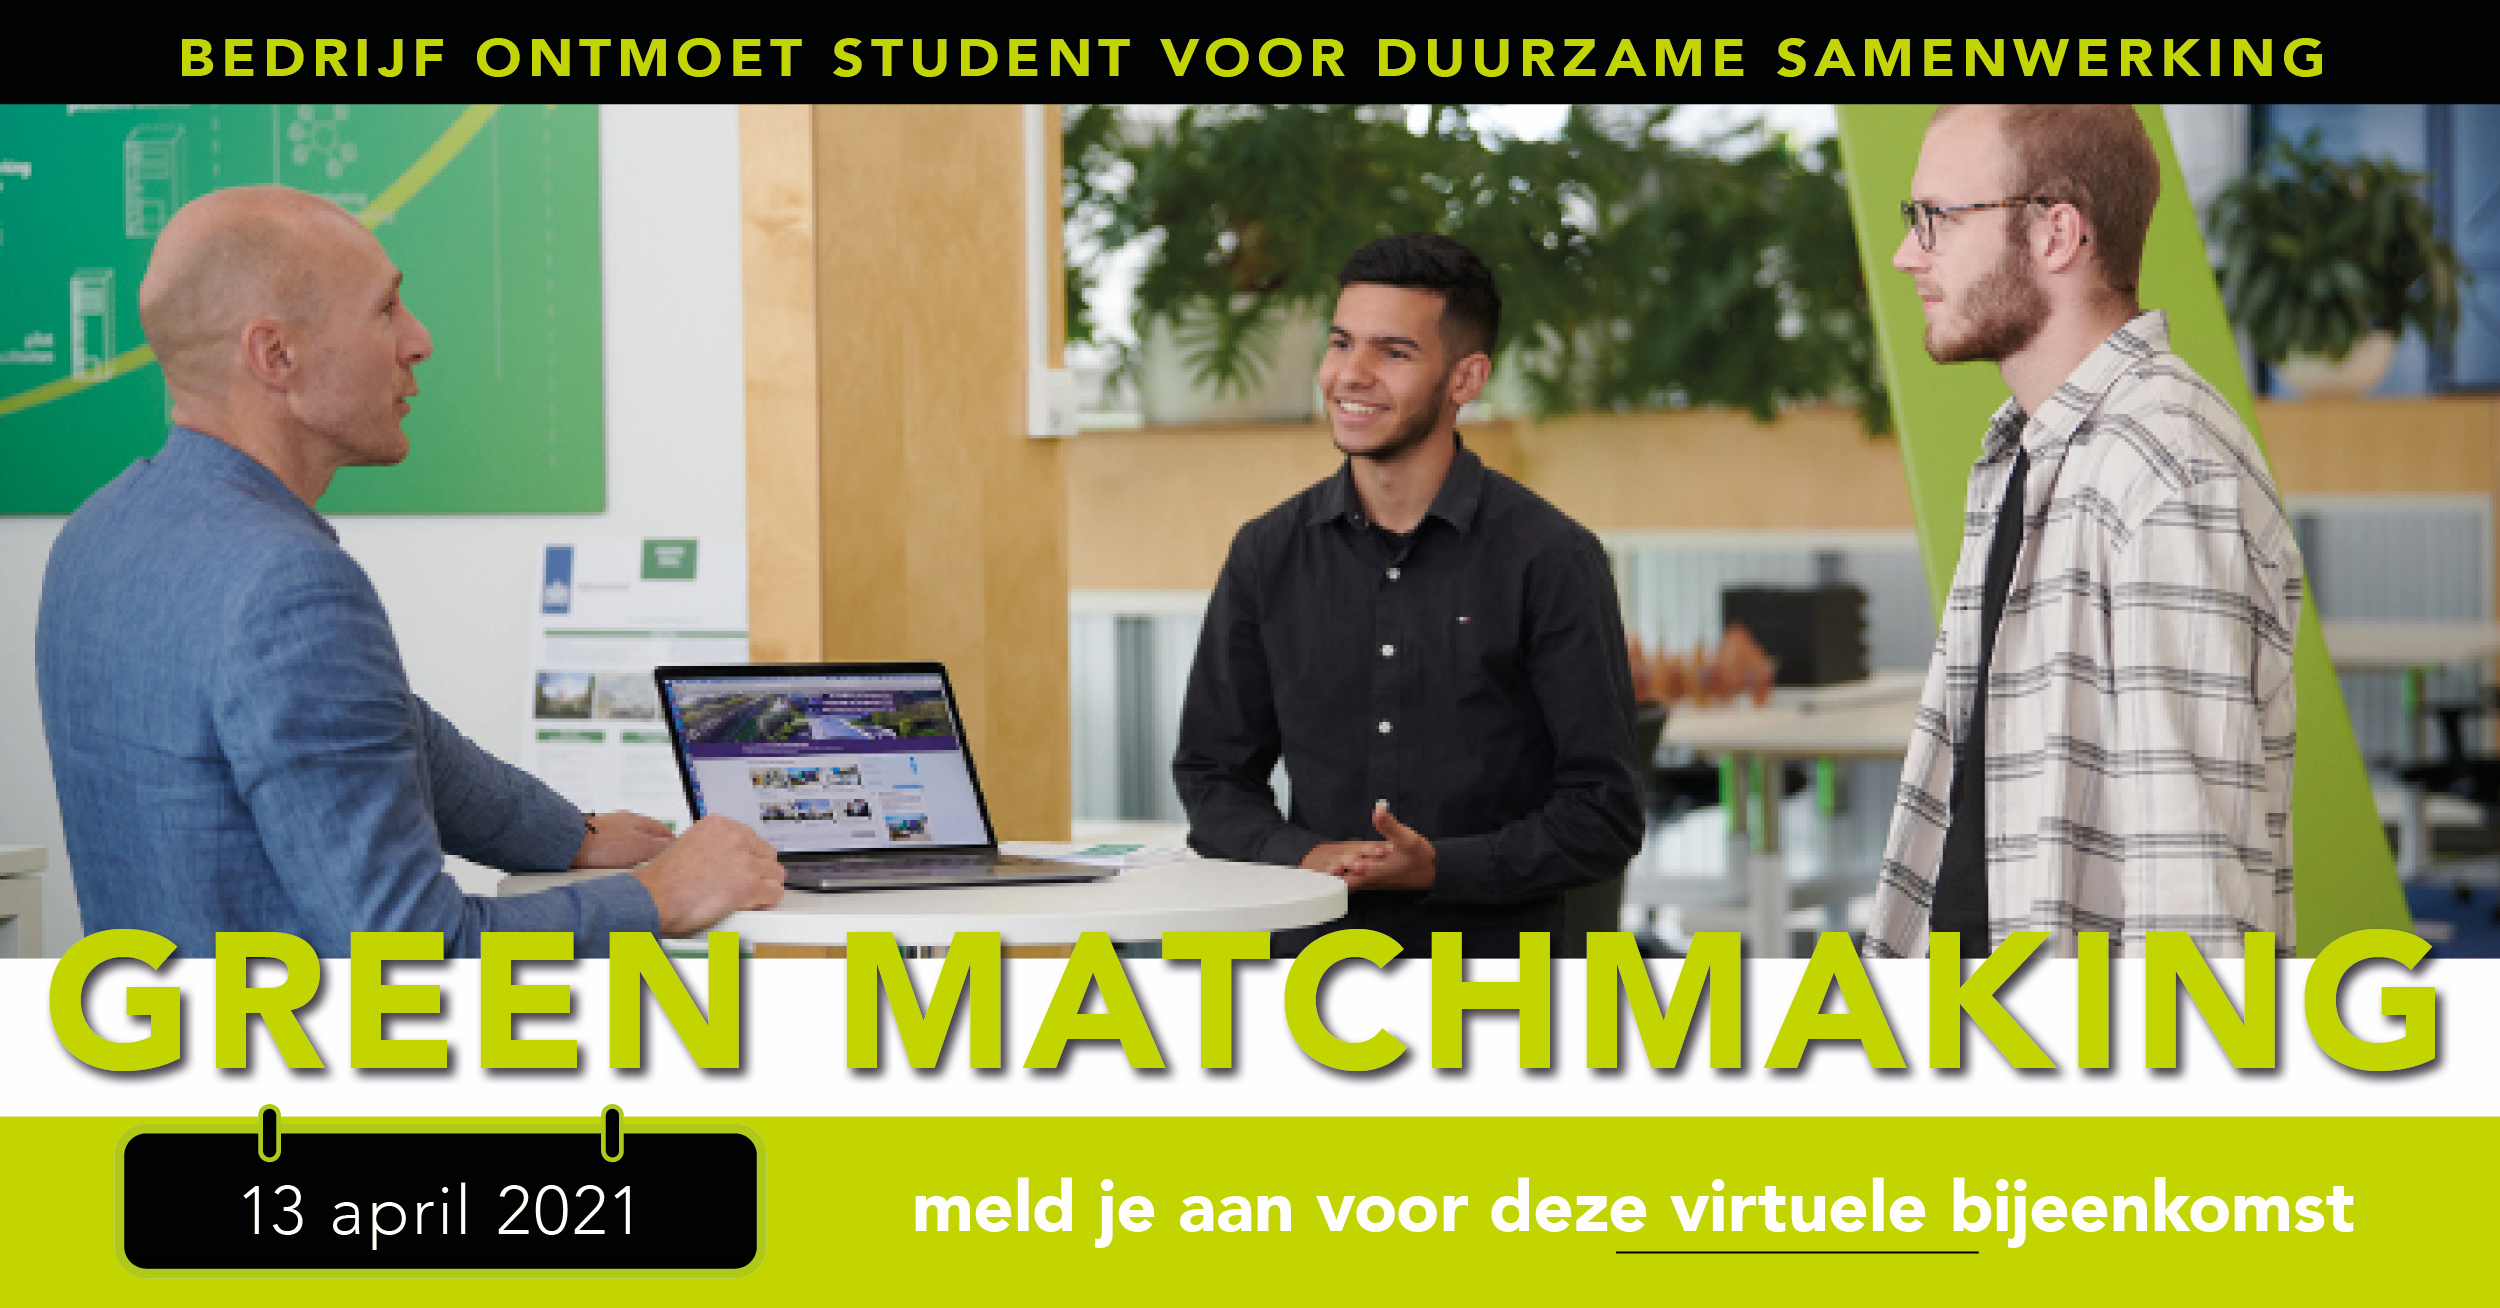 Green Matchmaking event: Bedrijf ontmoet student voor duurzame samenwerking